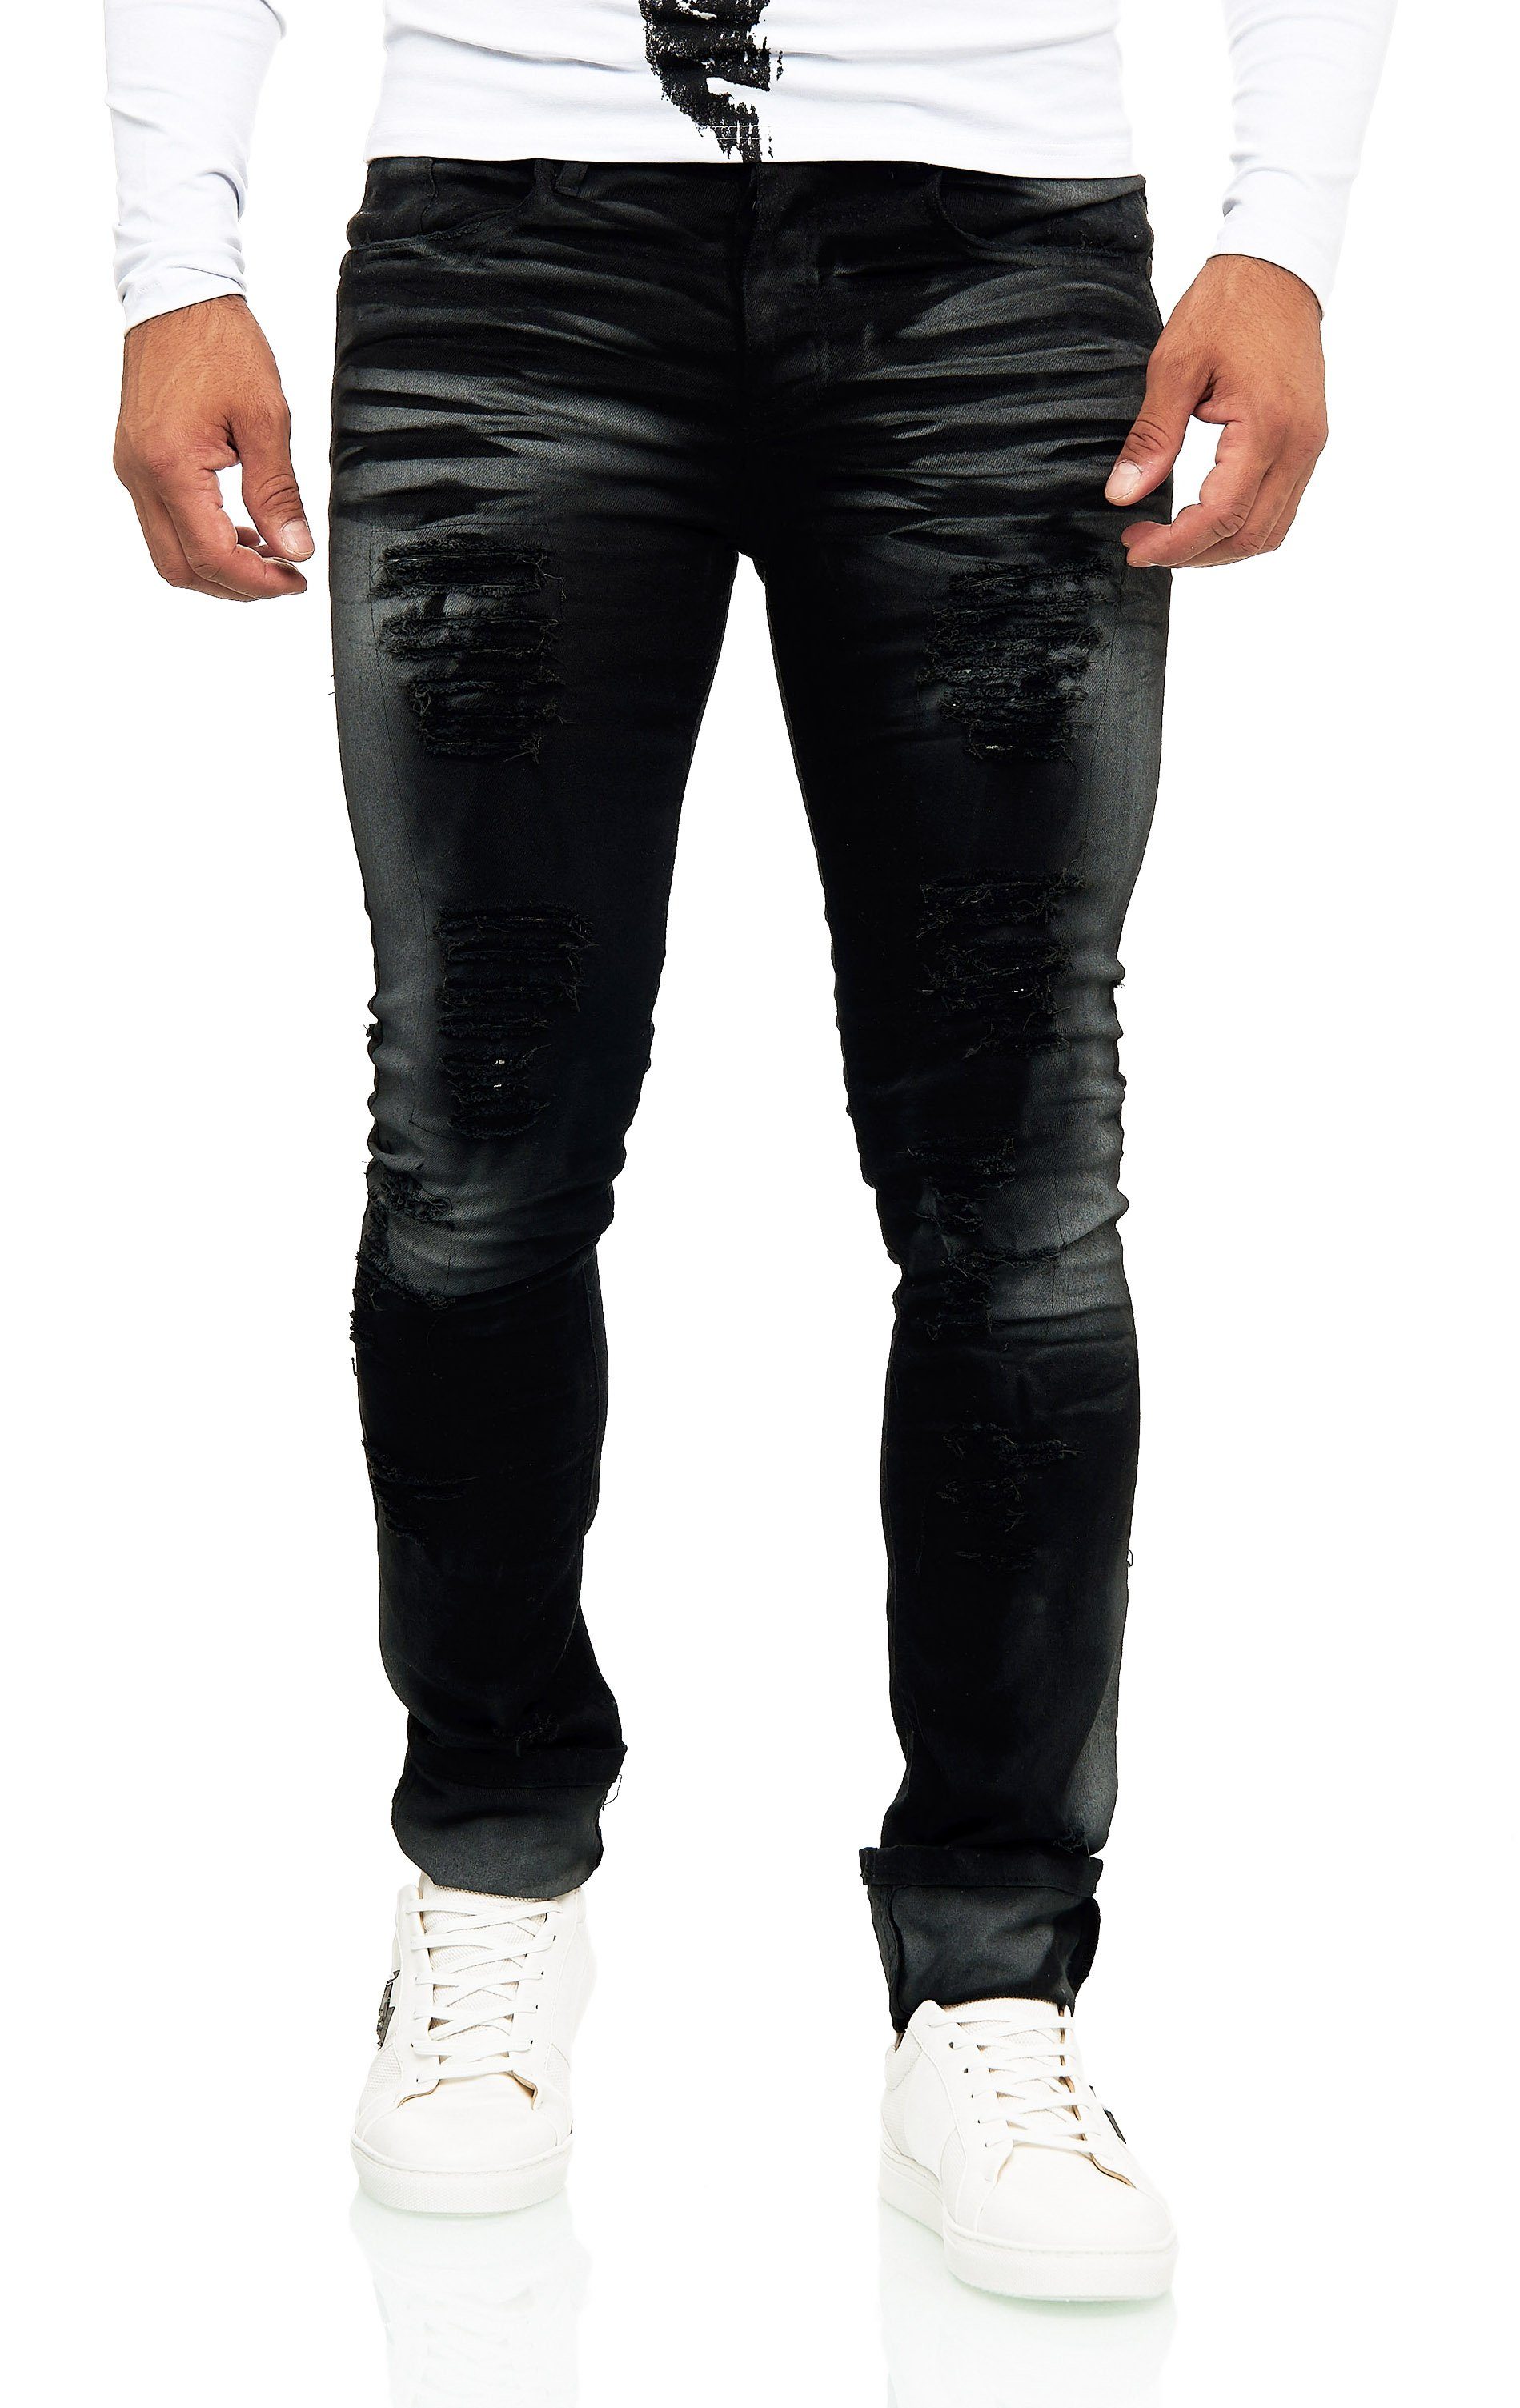 KINGZ mit im auffälliger Slim-fit-Jeans Destroyed-Look Waschung